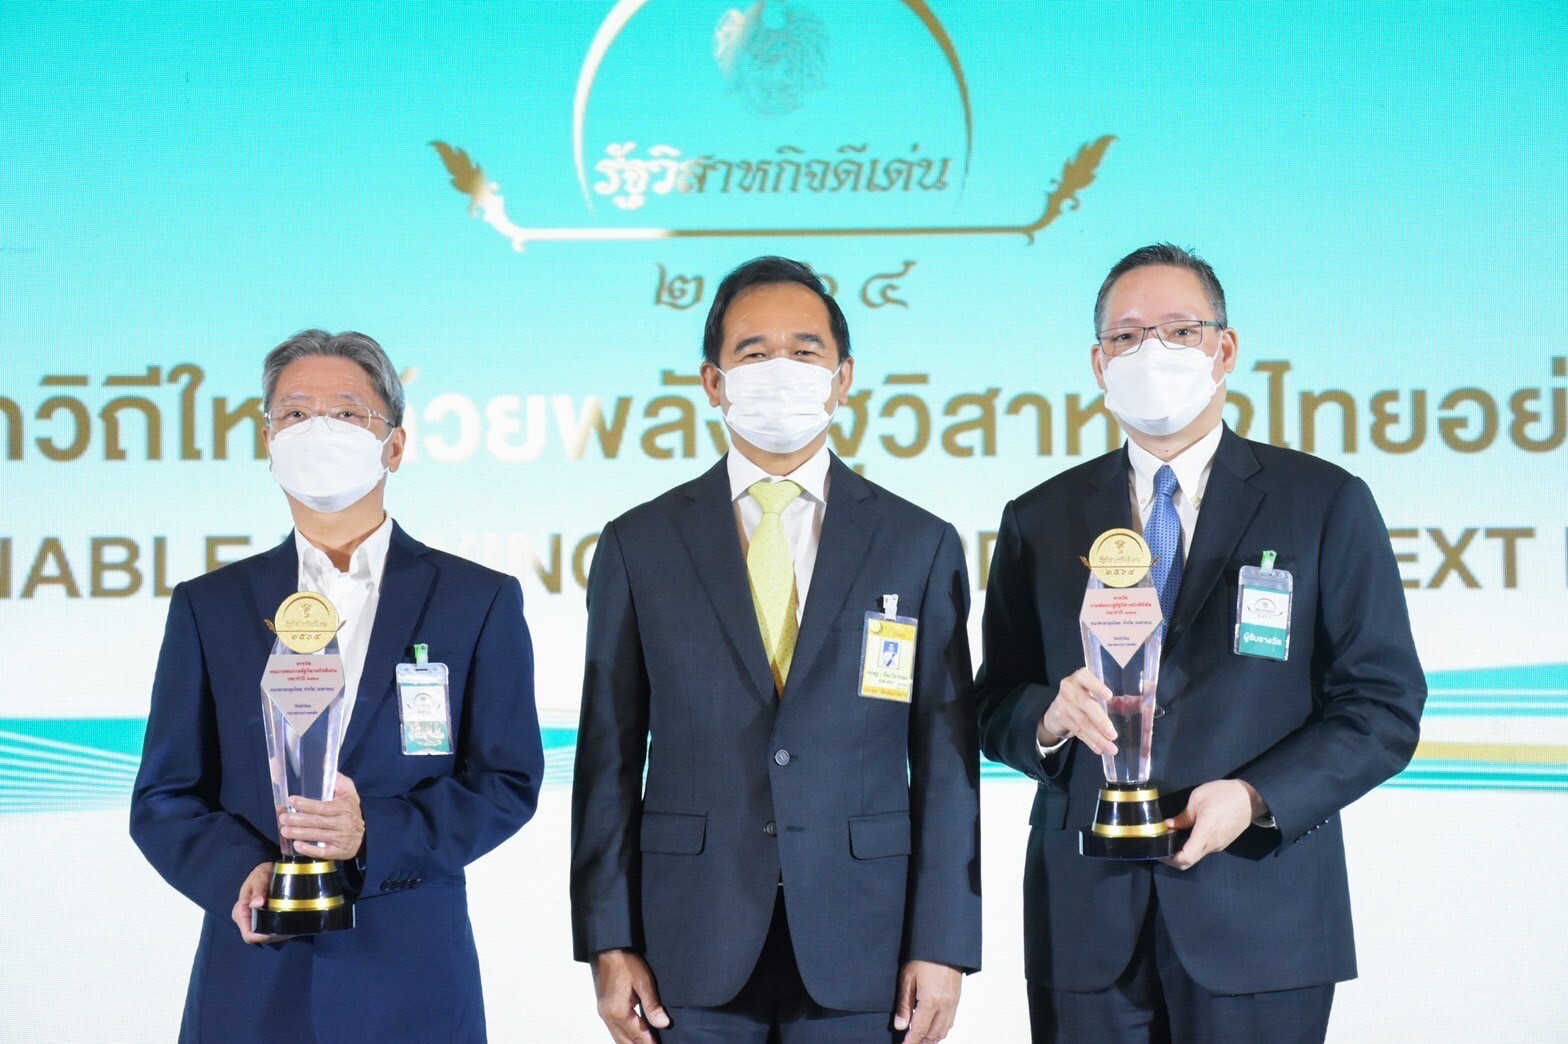 "กรุงไทย" คว้า 2 รางวัล รัฐวิสาหกิจดีเด่น ประจำปี 2564